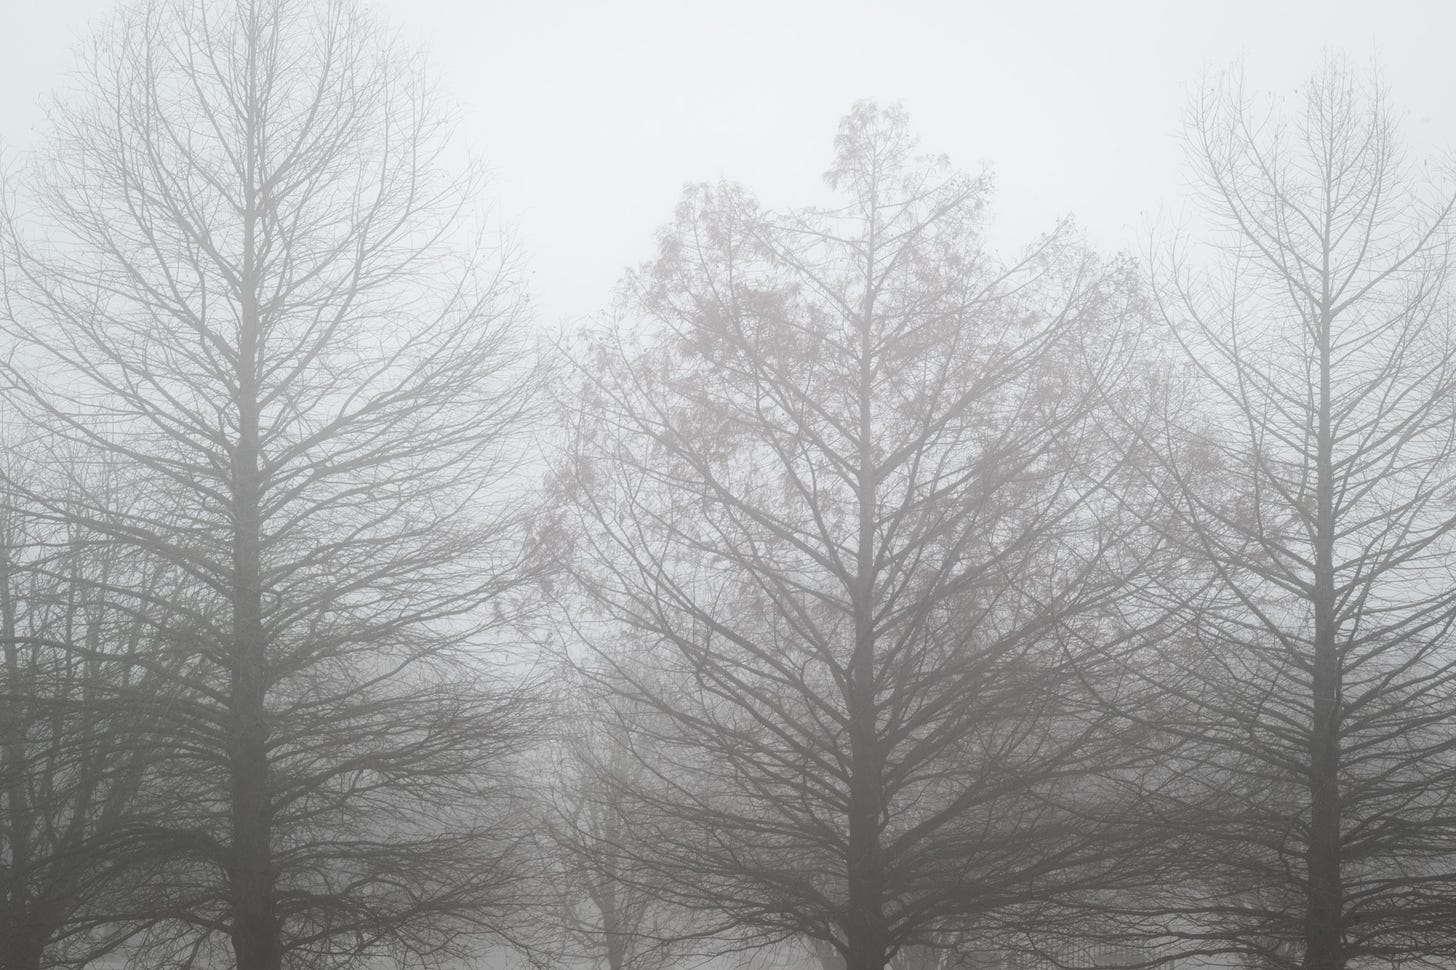 Leafless trees shrouded in fog